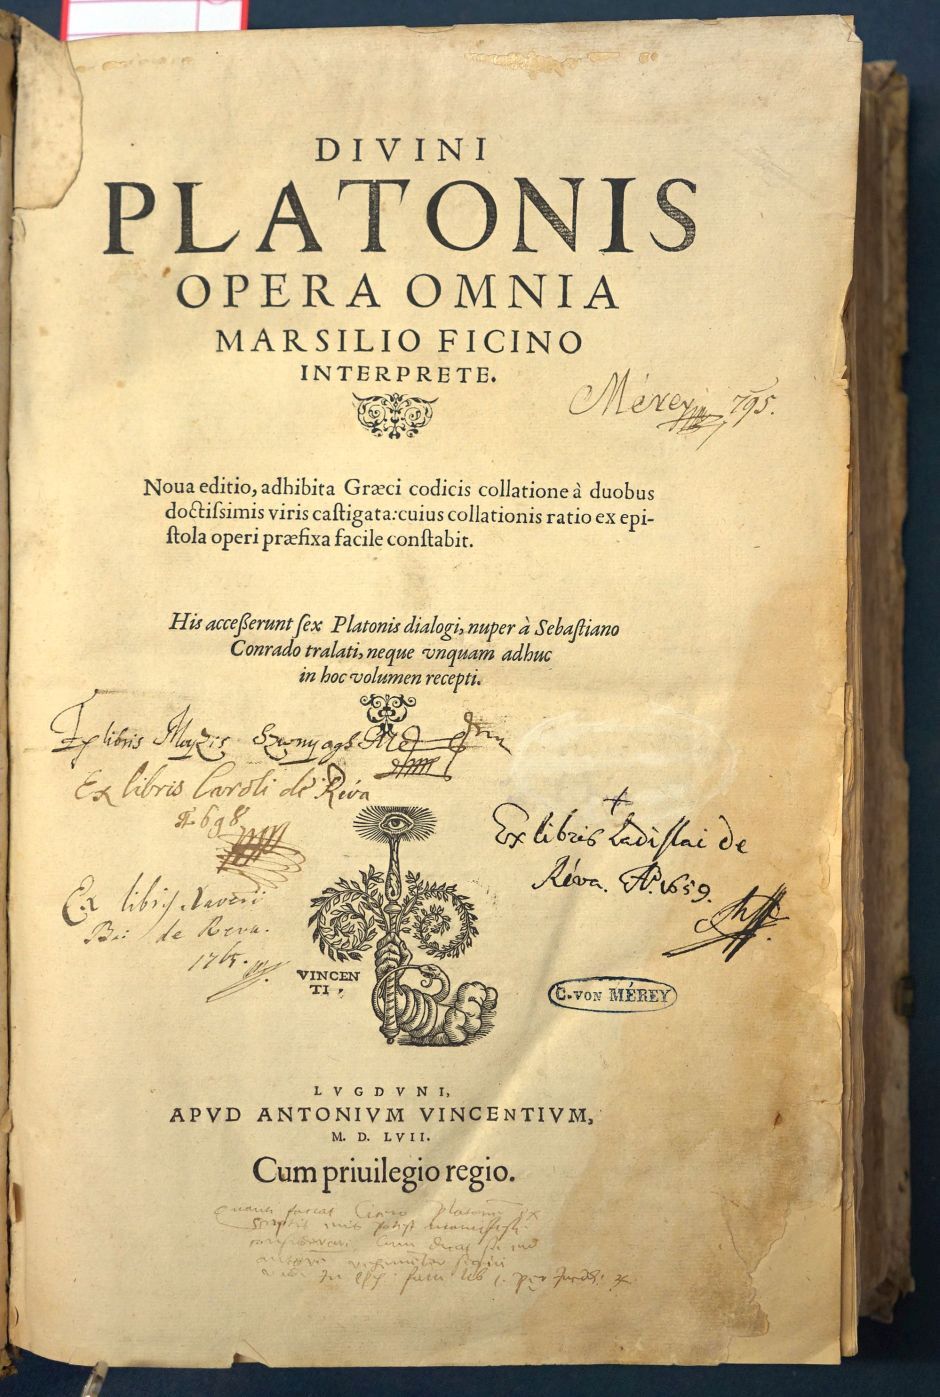 Lot 1170, Auction  115, Platon, Opera omnia Marsilio Ficino